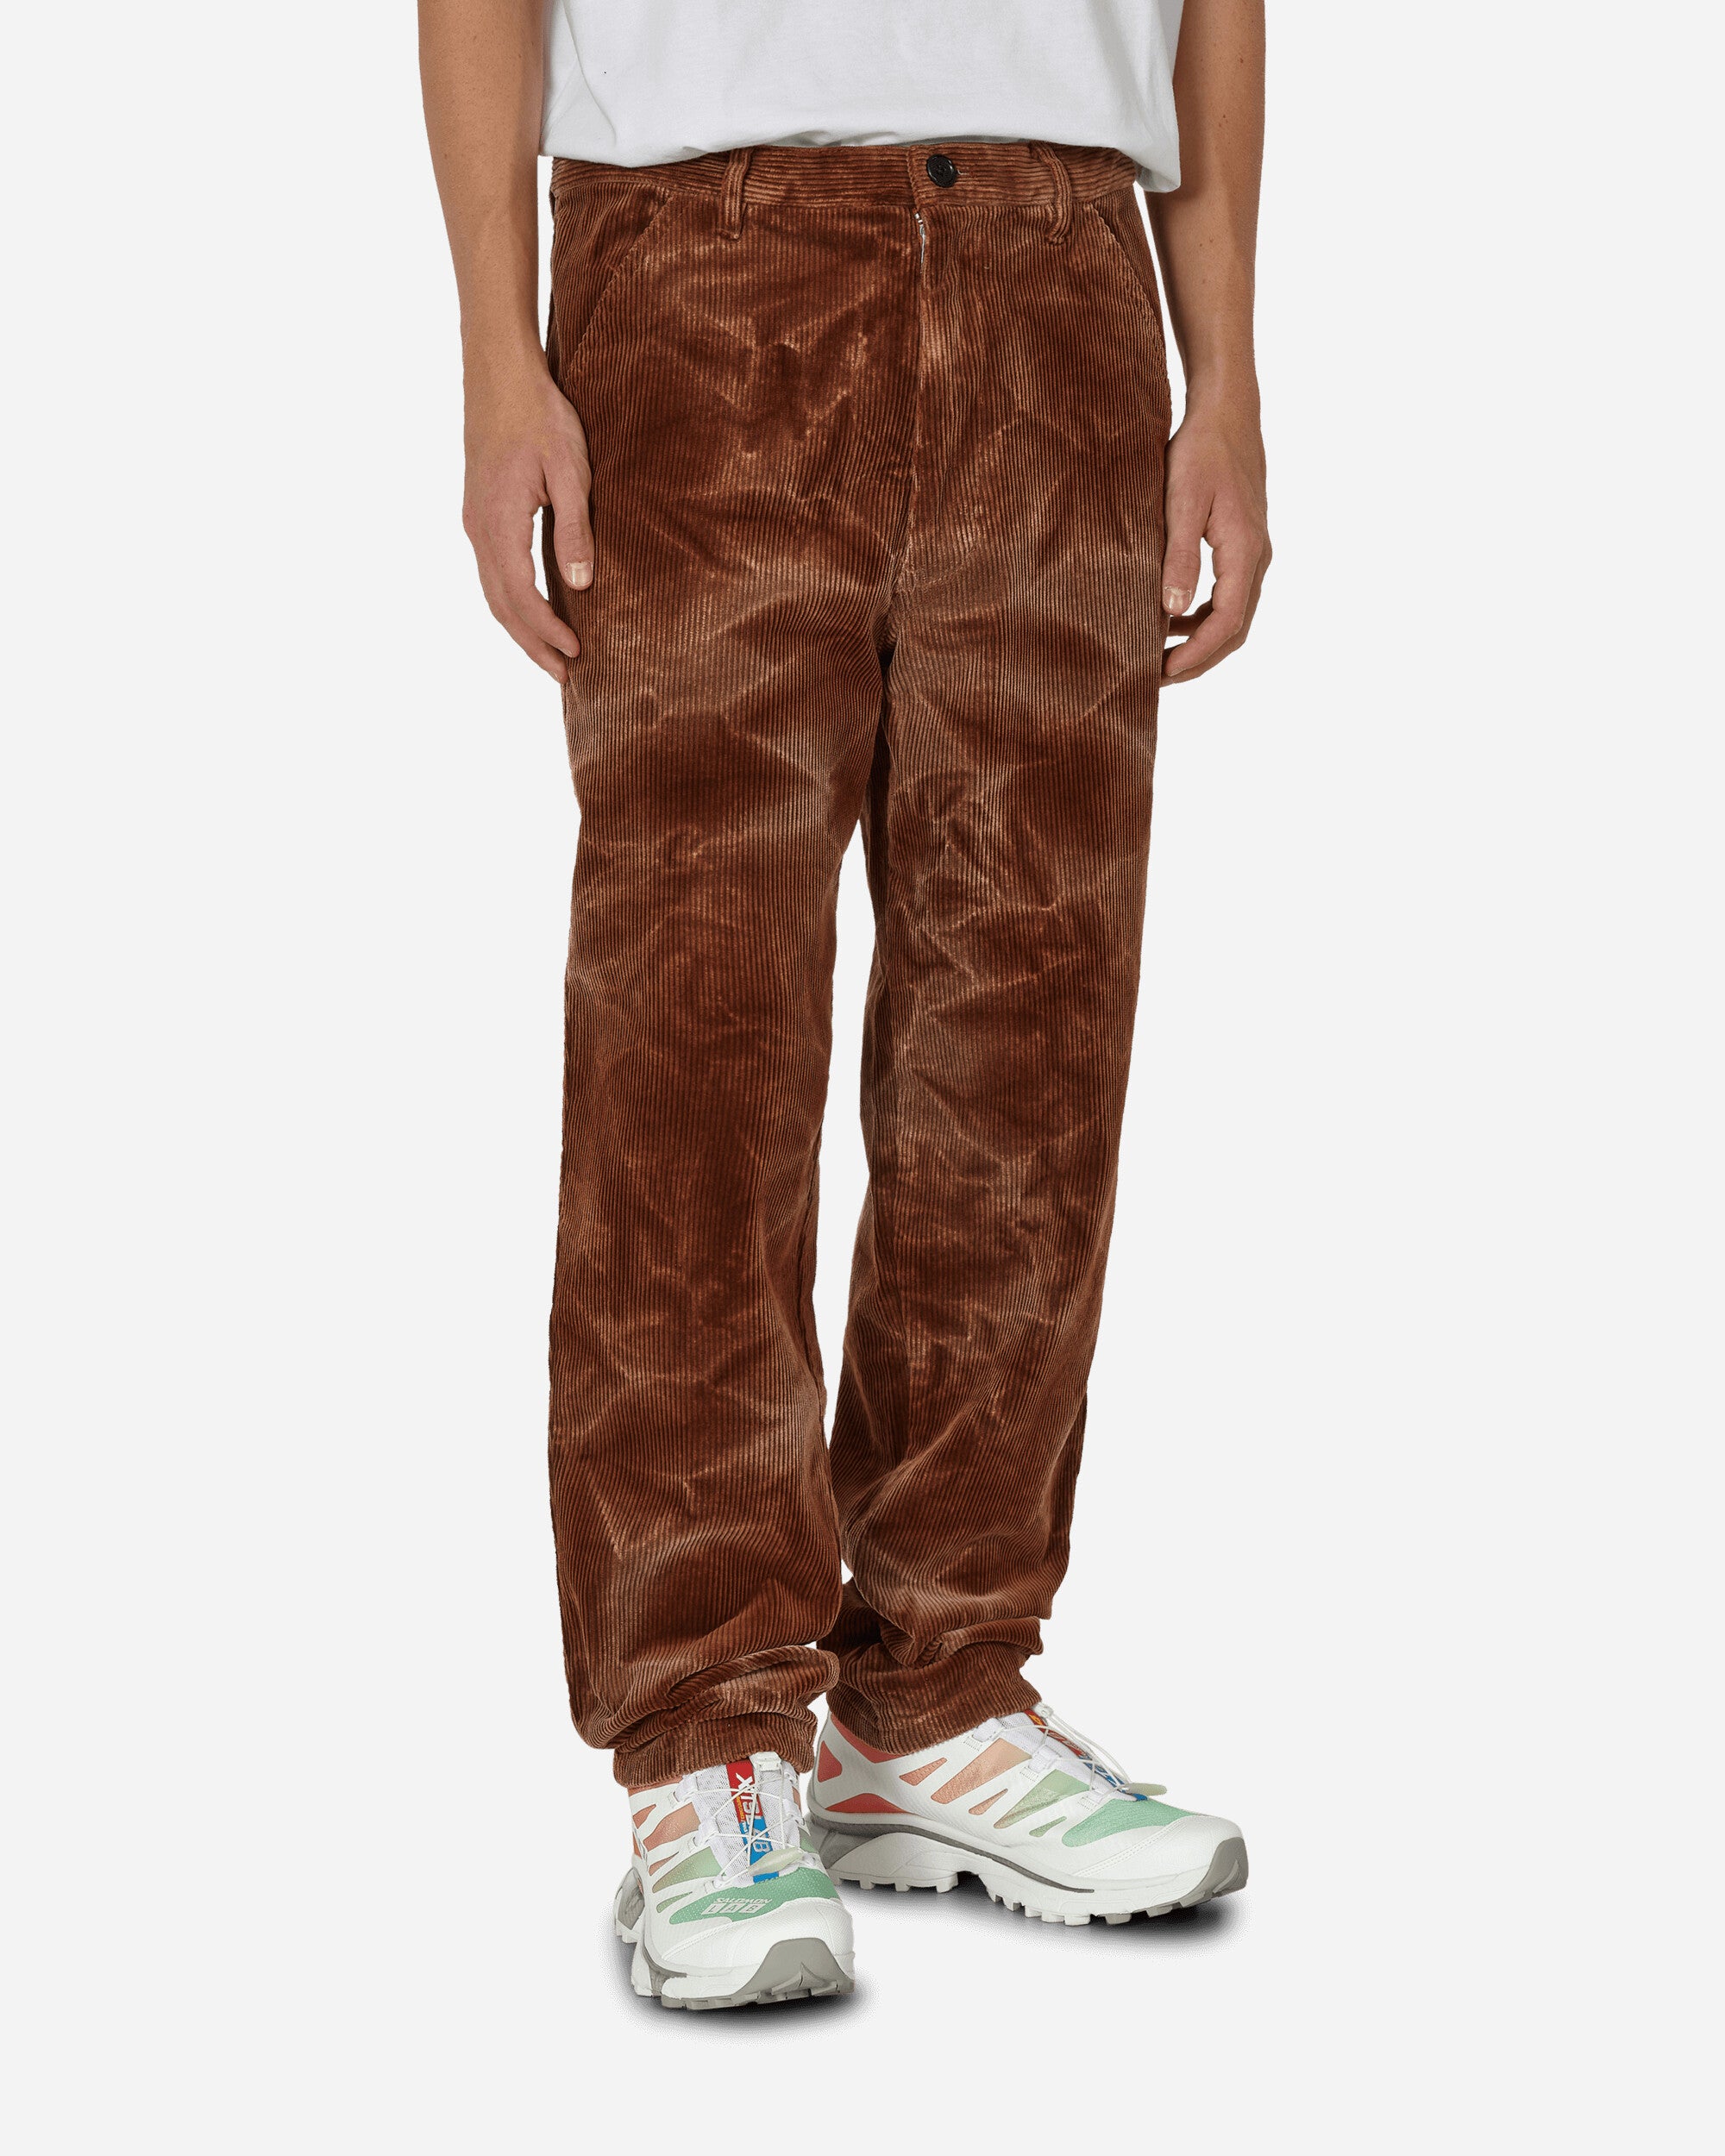 Comme Des Garçons Shirt Mens Pants Woven Brown Pants Trousers FL-P007-W23  2